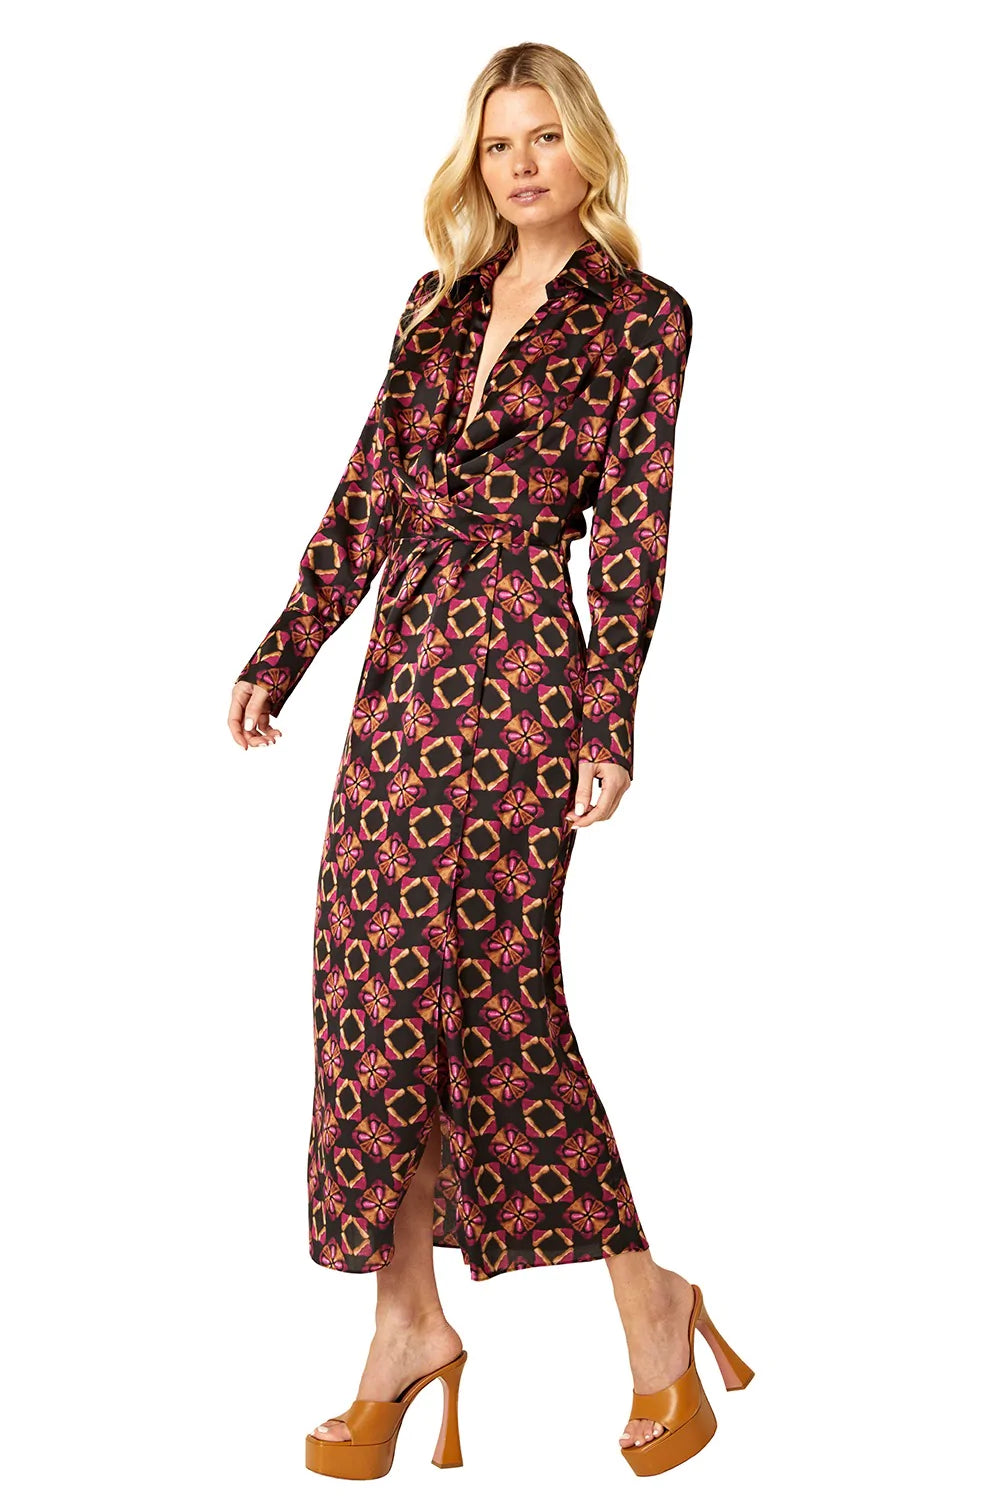 Valentina Dress in Shibori Prism Satin